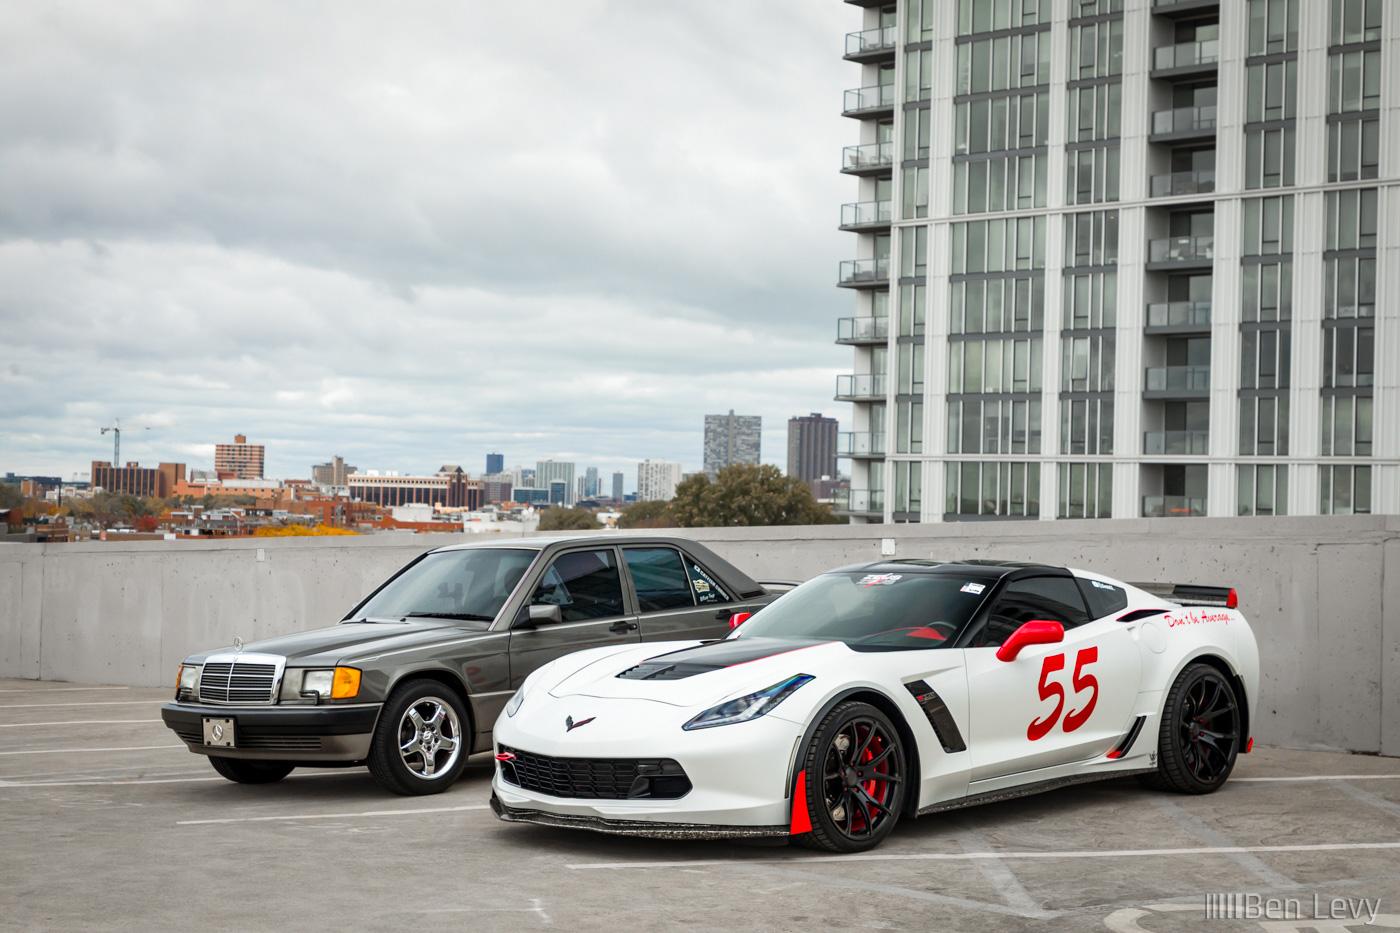 E190 and Corvette Z06